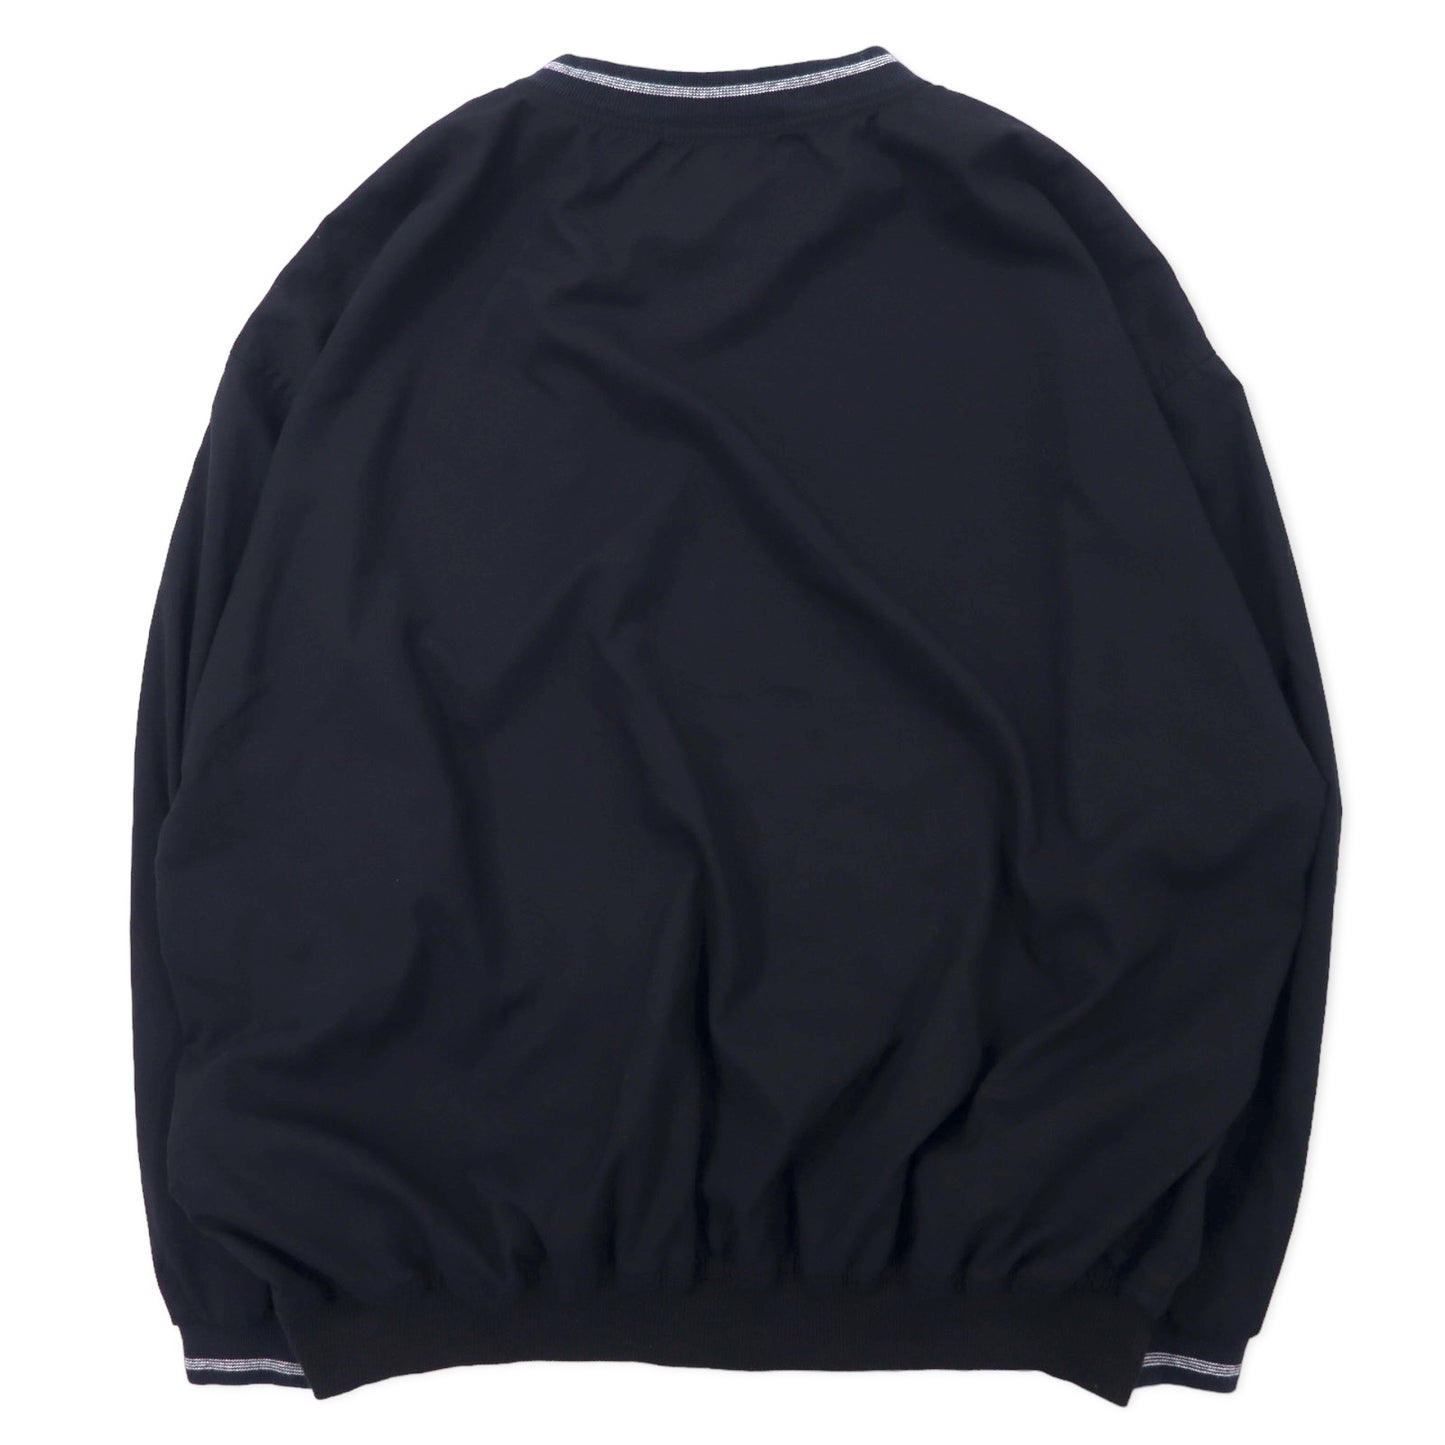 AKWA USA製 ピステ プルオーバー ナイロンジャケット XL ブラック ポリエステル US企業 DUPONT ワンポイント刺繍 ビッグサイズ